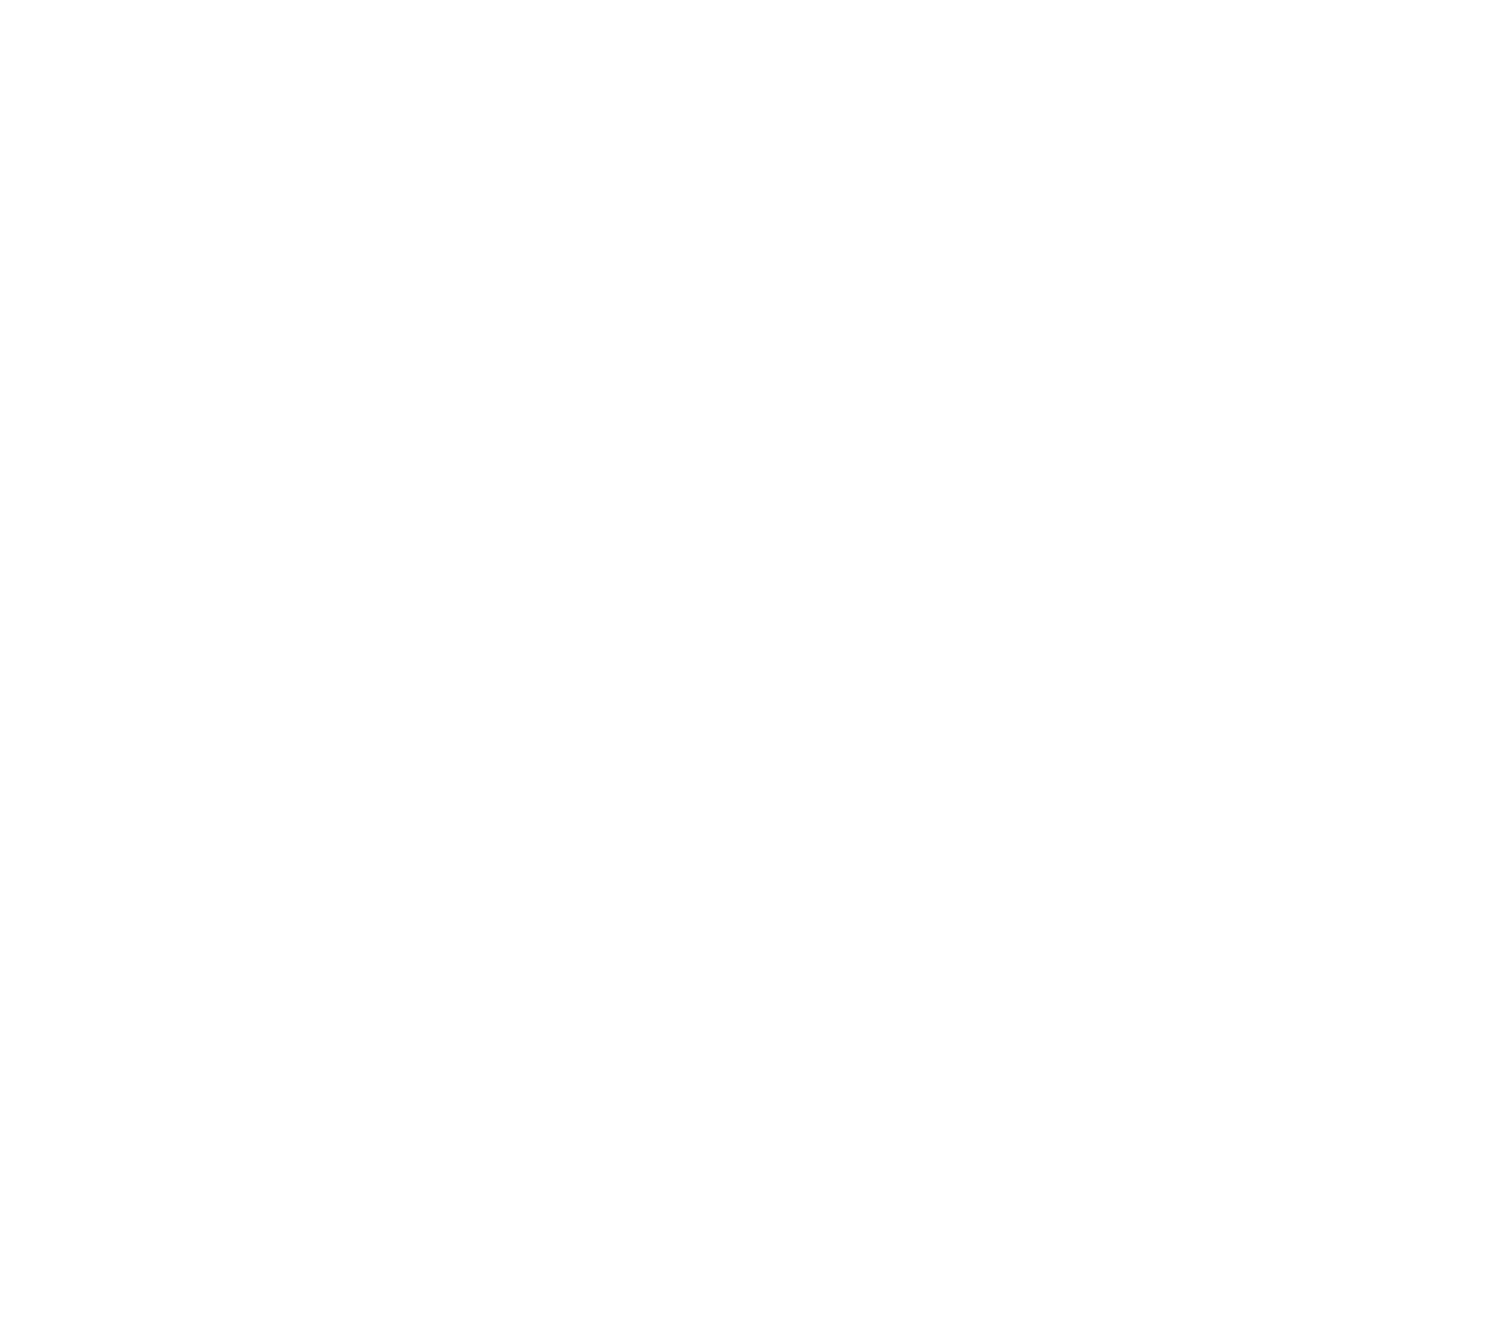 AKOTA Home Care